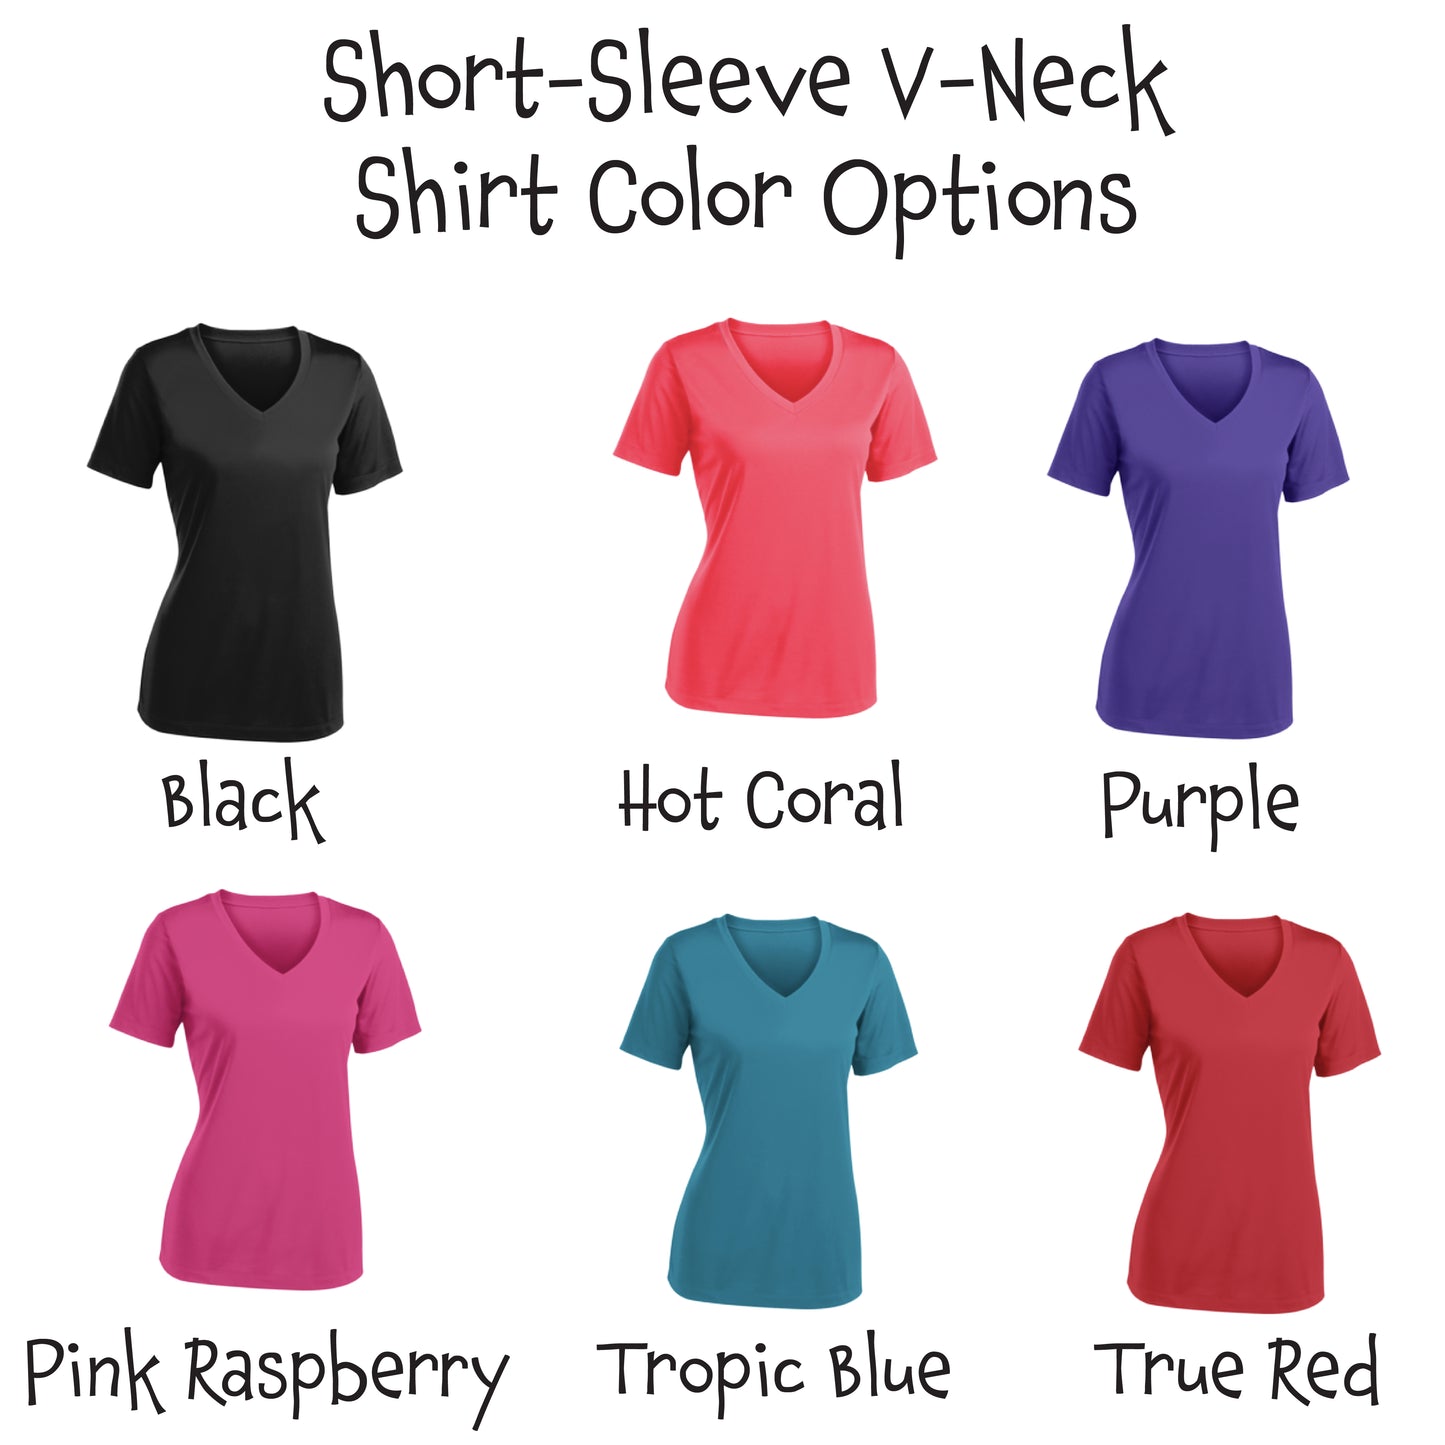 Pickleball Is Life | Women's Short Sleeve V-Neck Pickleball Shirts | 100% Polyester